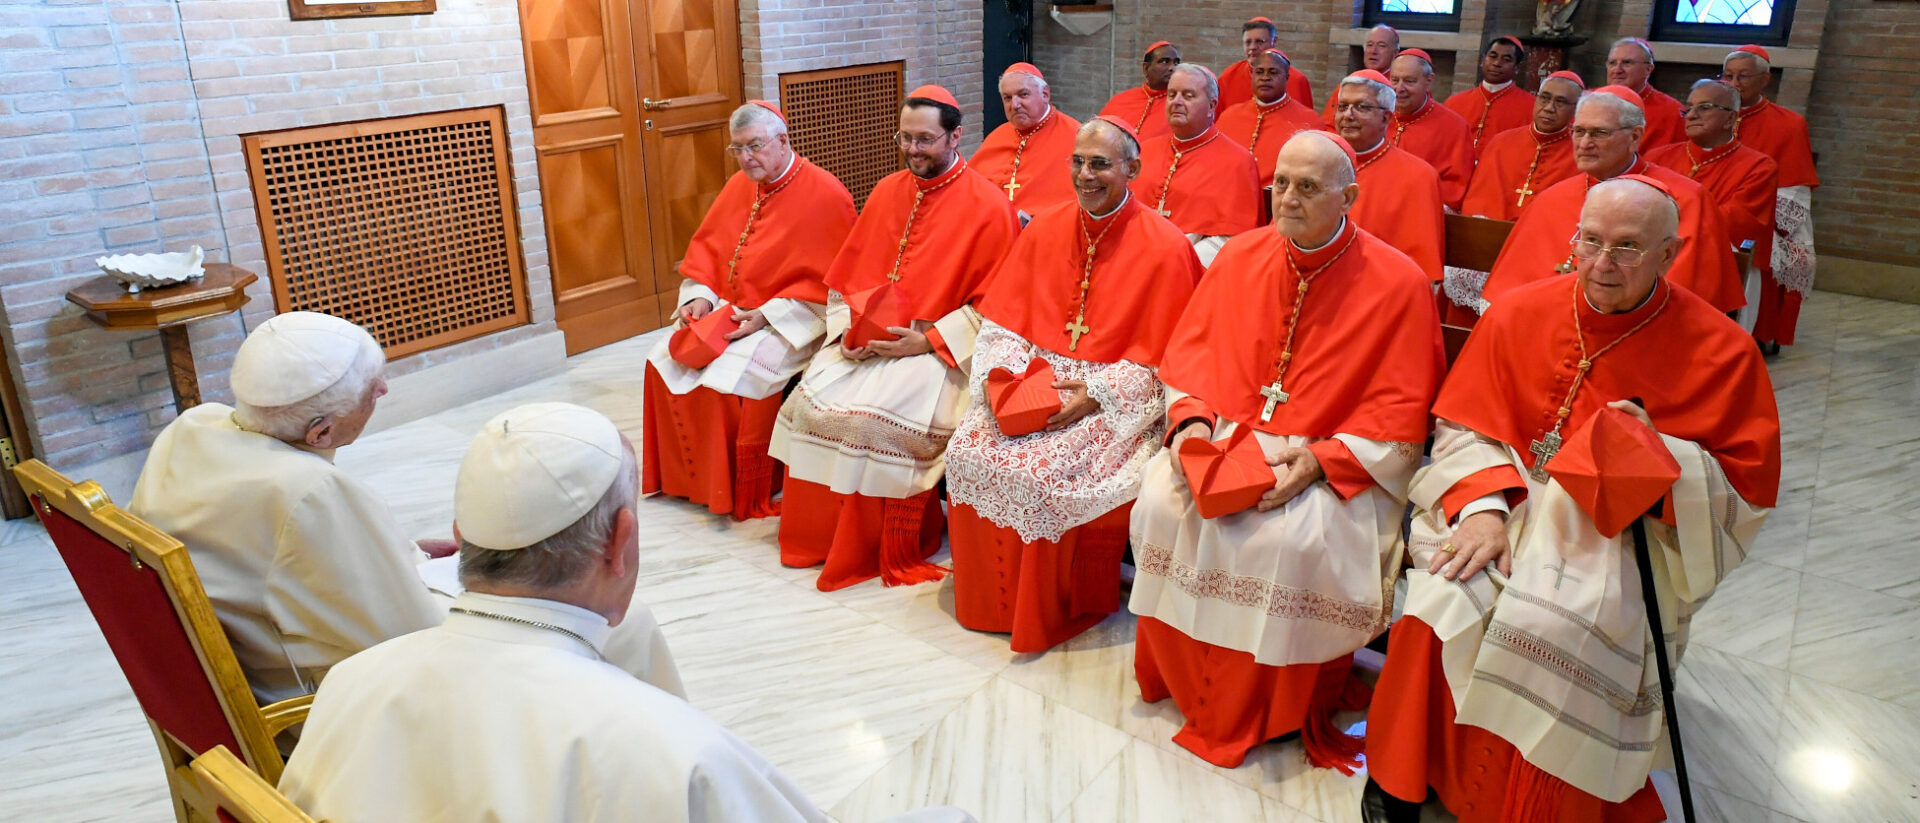 Die neuen Kardinäle bei Papst Franziskus und Benedikt XVI.